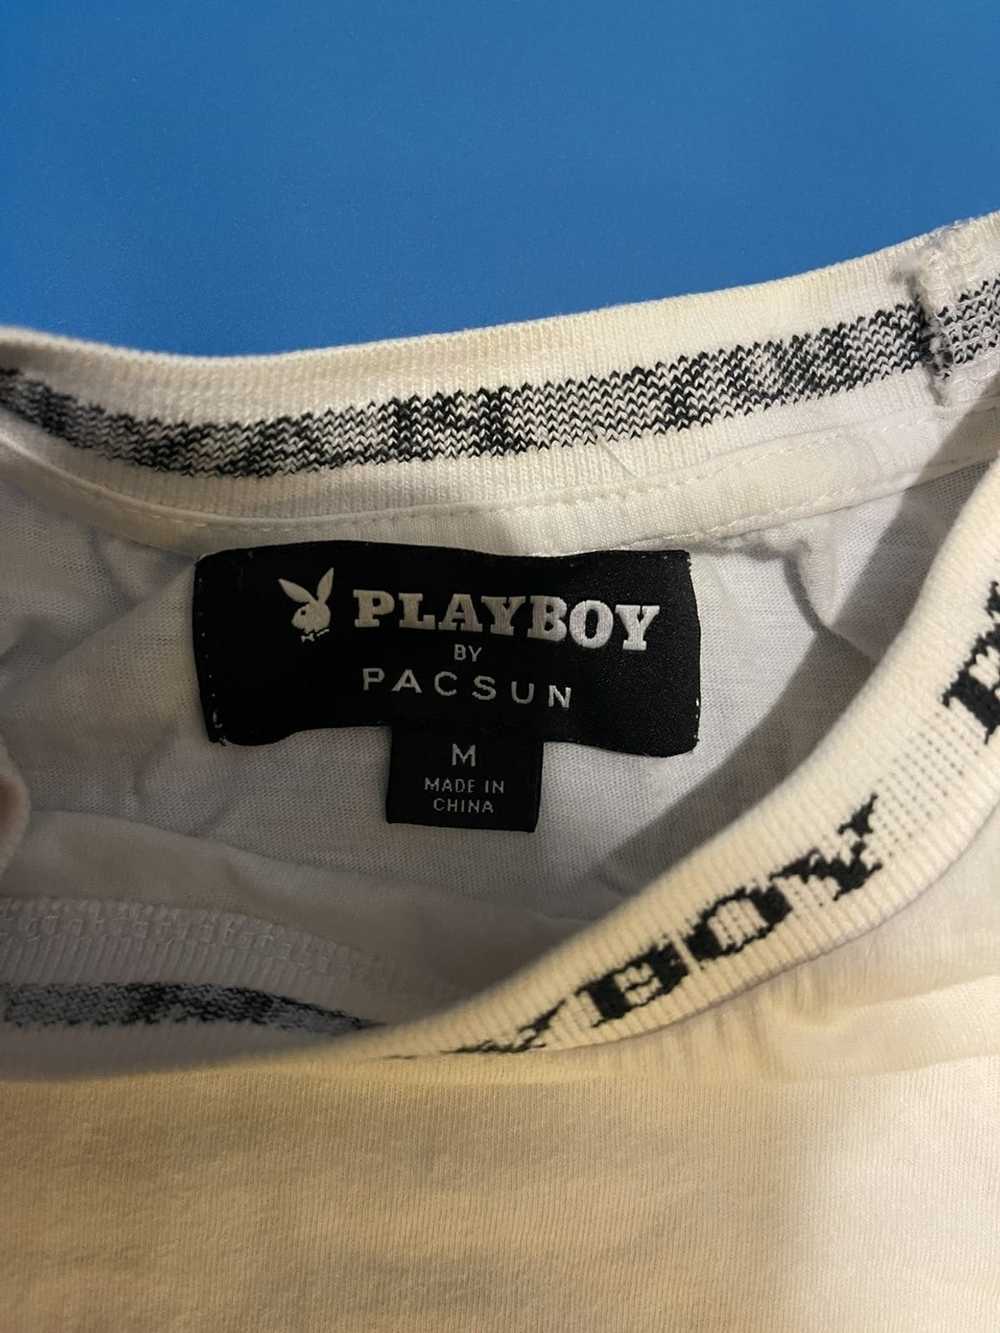 Playboy Playboy tee - image 3